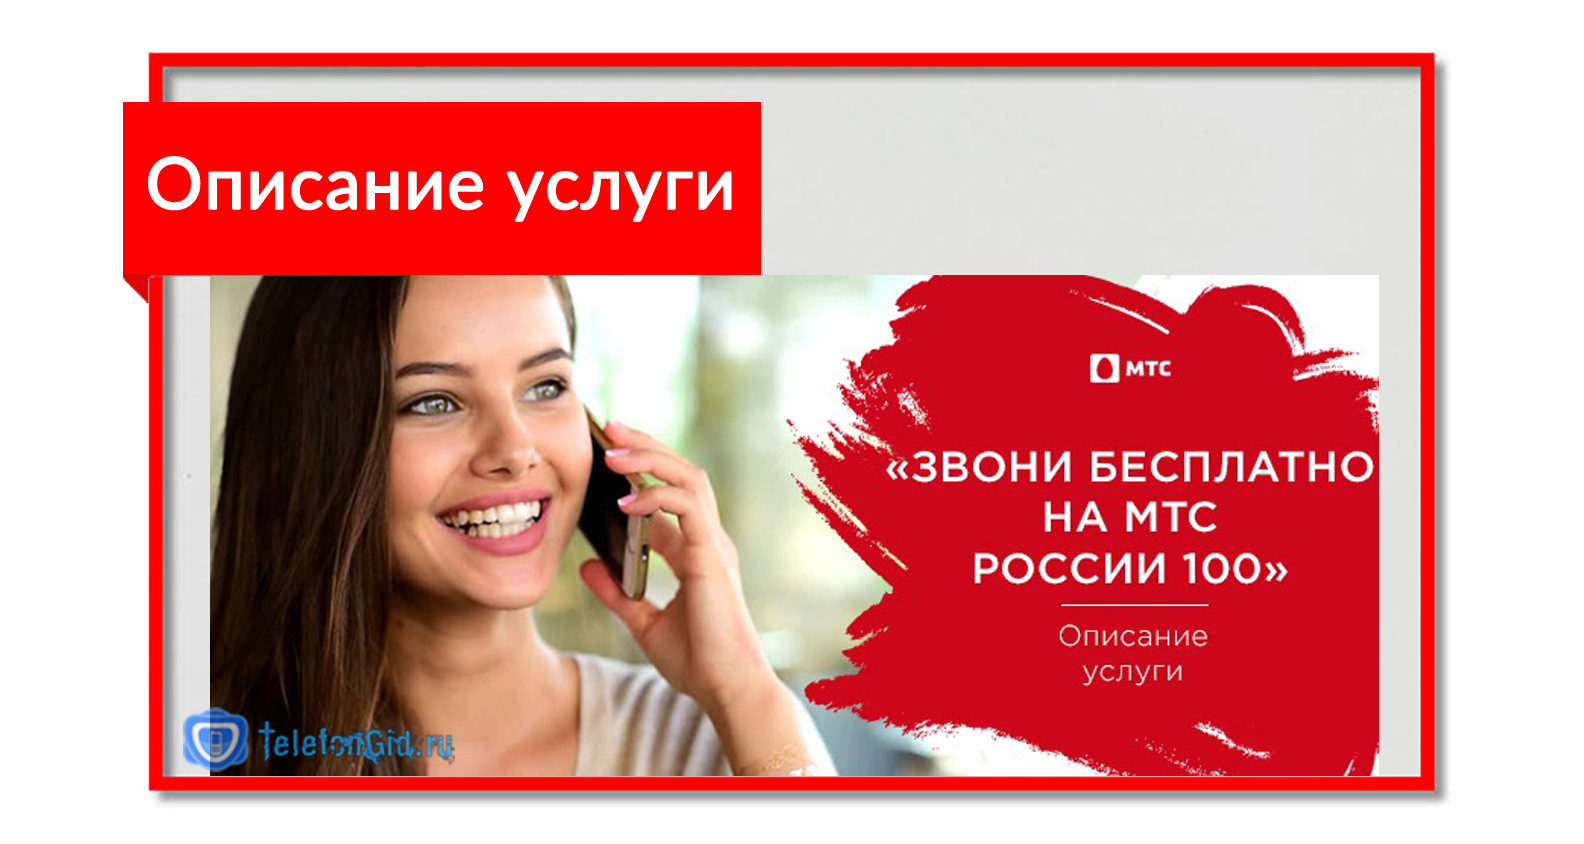 "звони бесплатно на мтс россии-100": всё, что нужно знать об услуге!